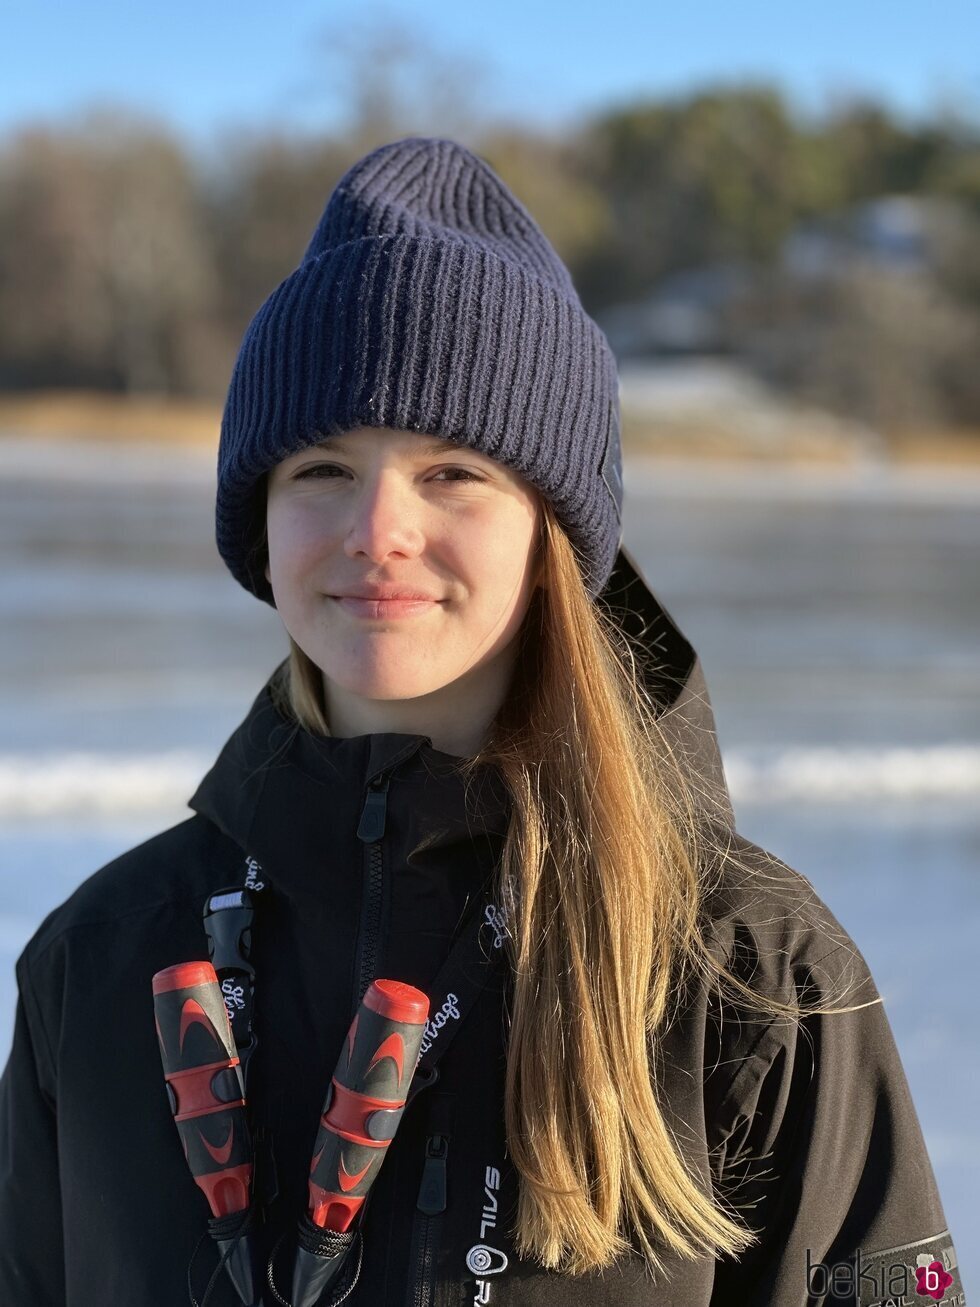 Estelle de Suecia en la nieve en su 12 cumpleaños